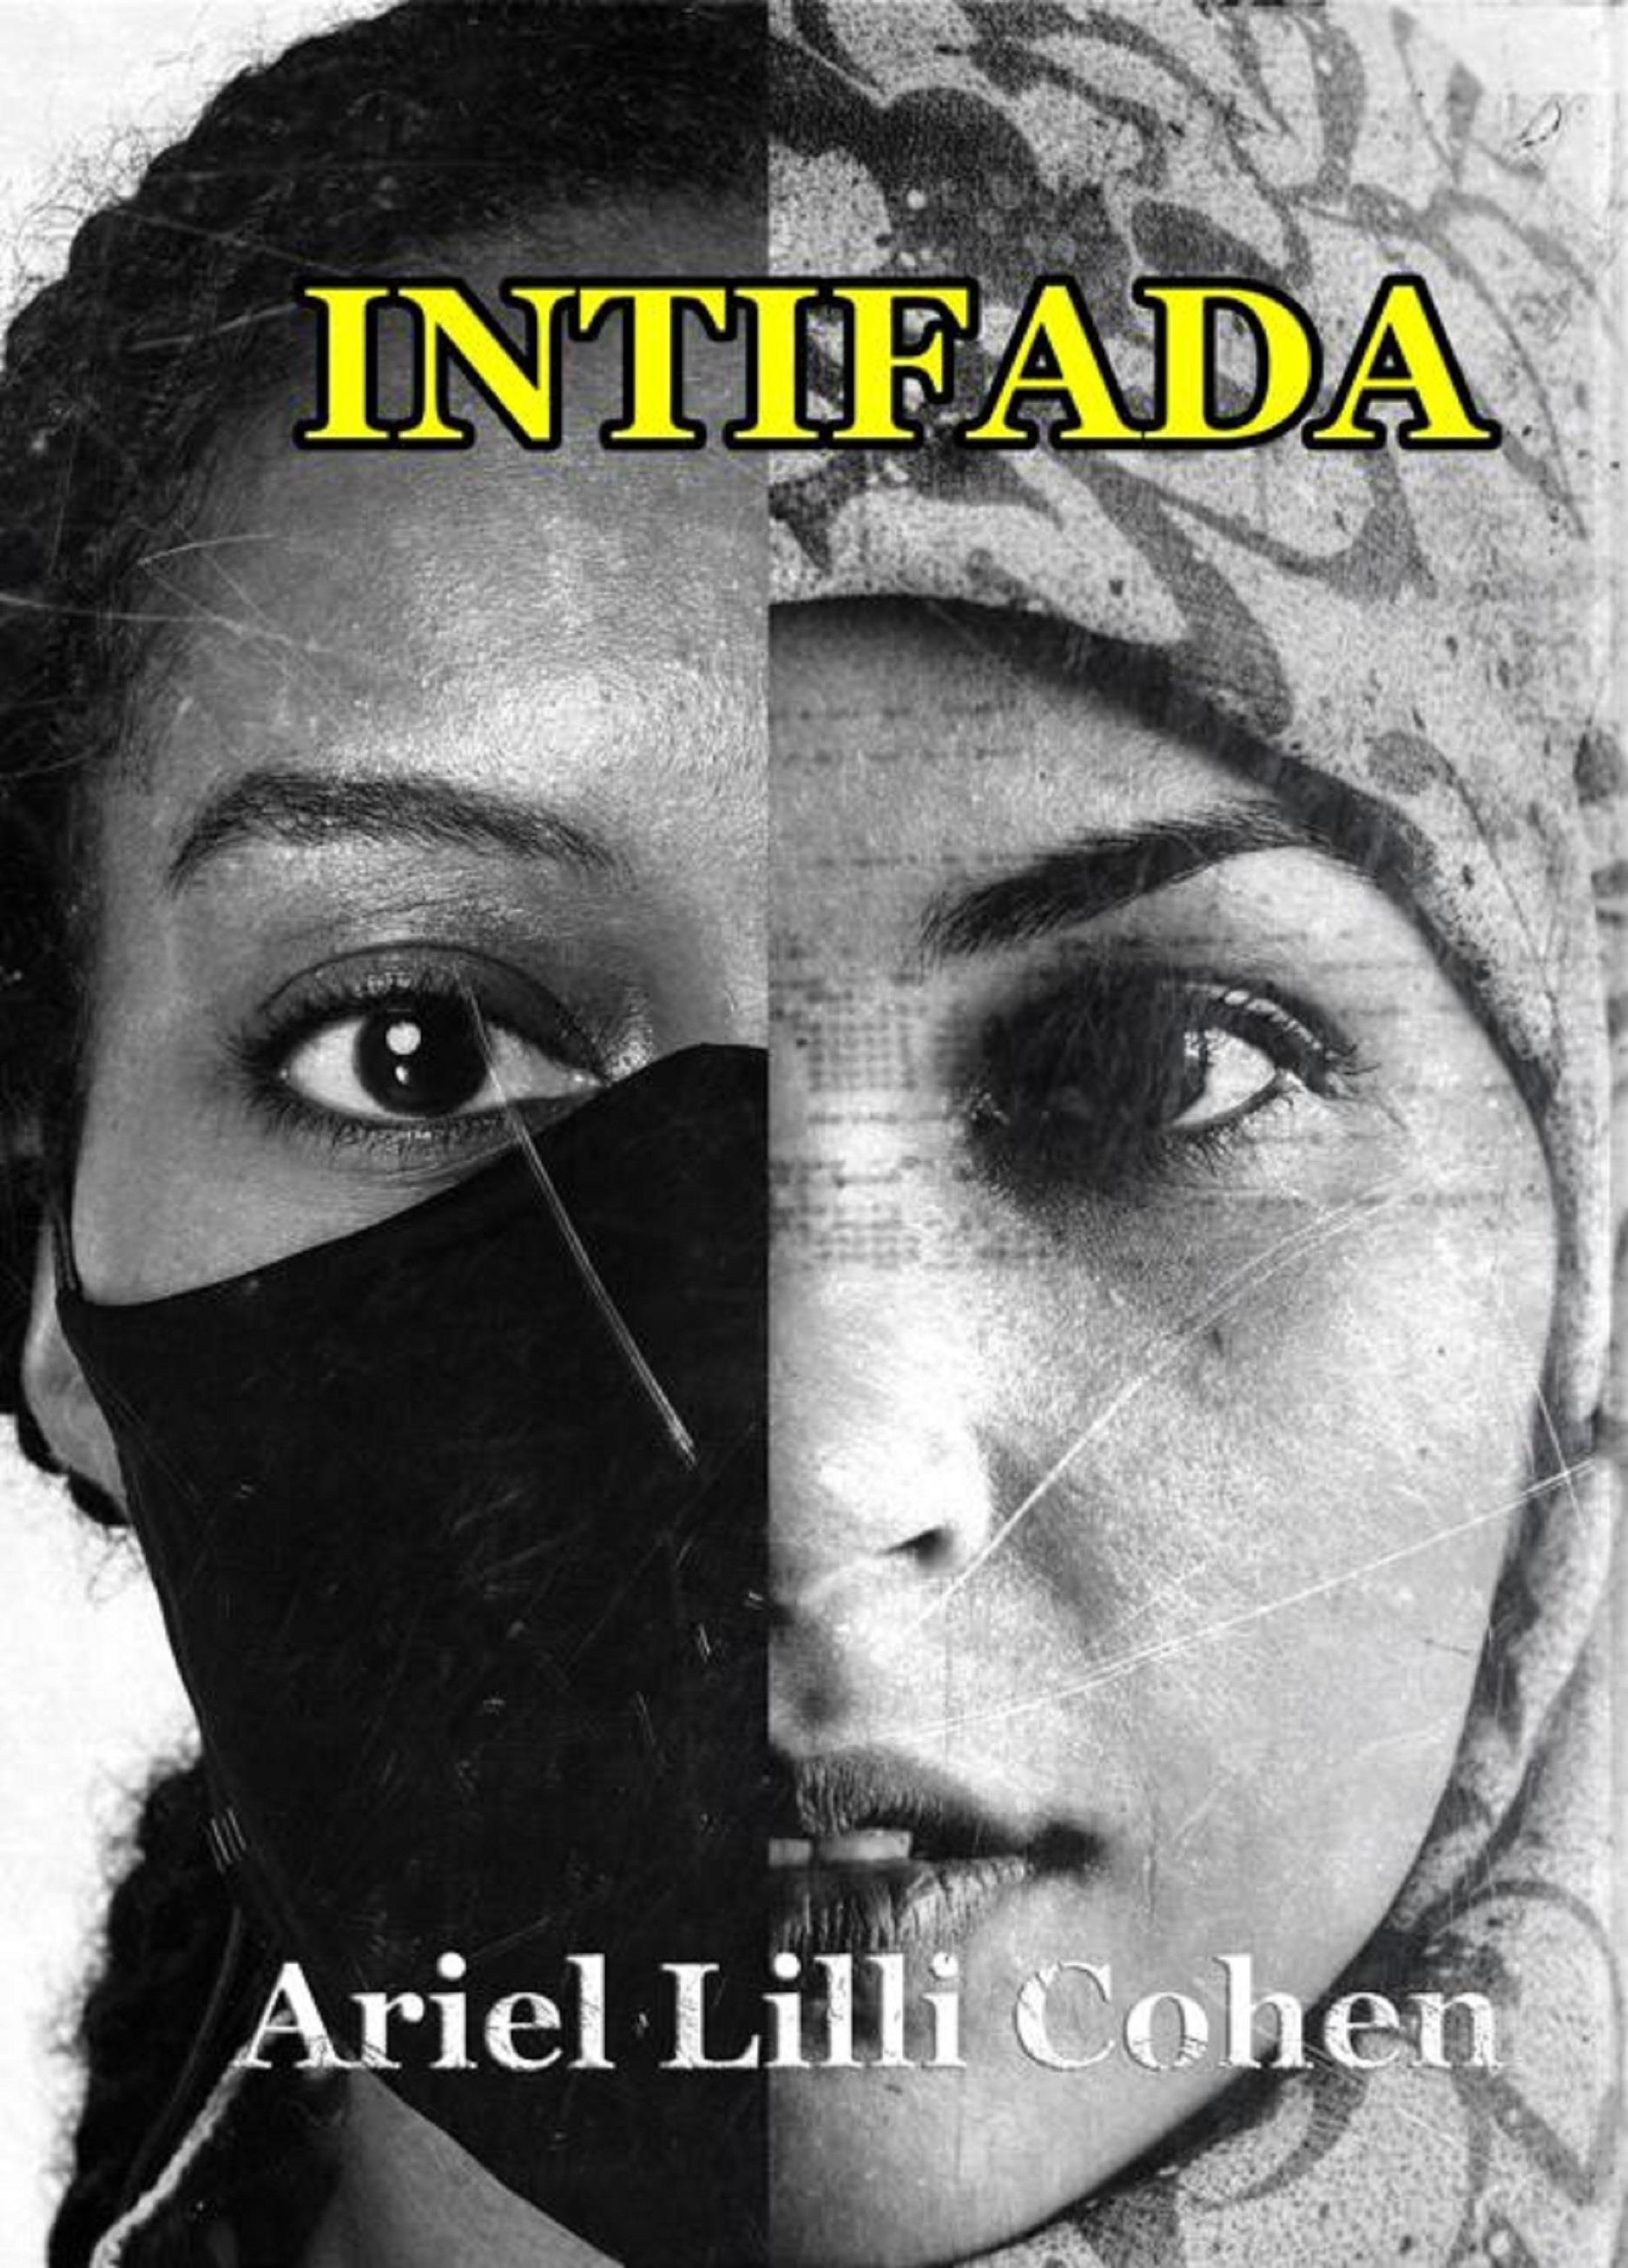 Be Jihad (Intifada)